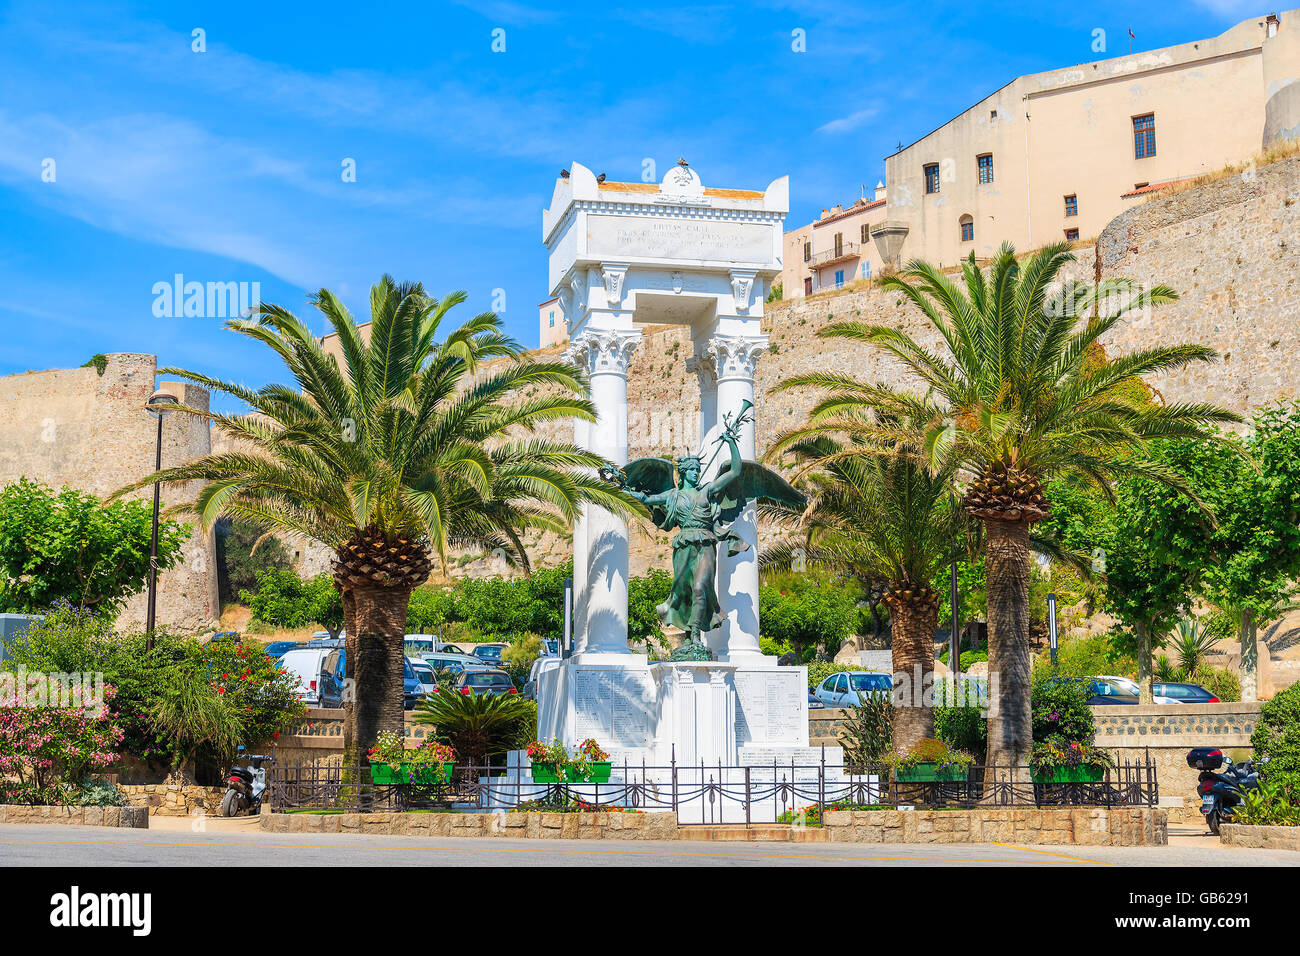 CALVI, Korsika-JUN 29, 2015: Die Statue des Fremiet wurde auf Initiative des Architekten Clerambault errichtet. Es ist Marmor Stockfoto